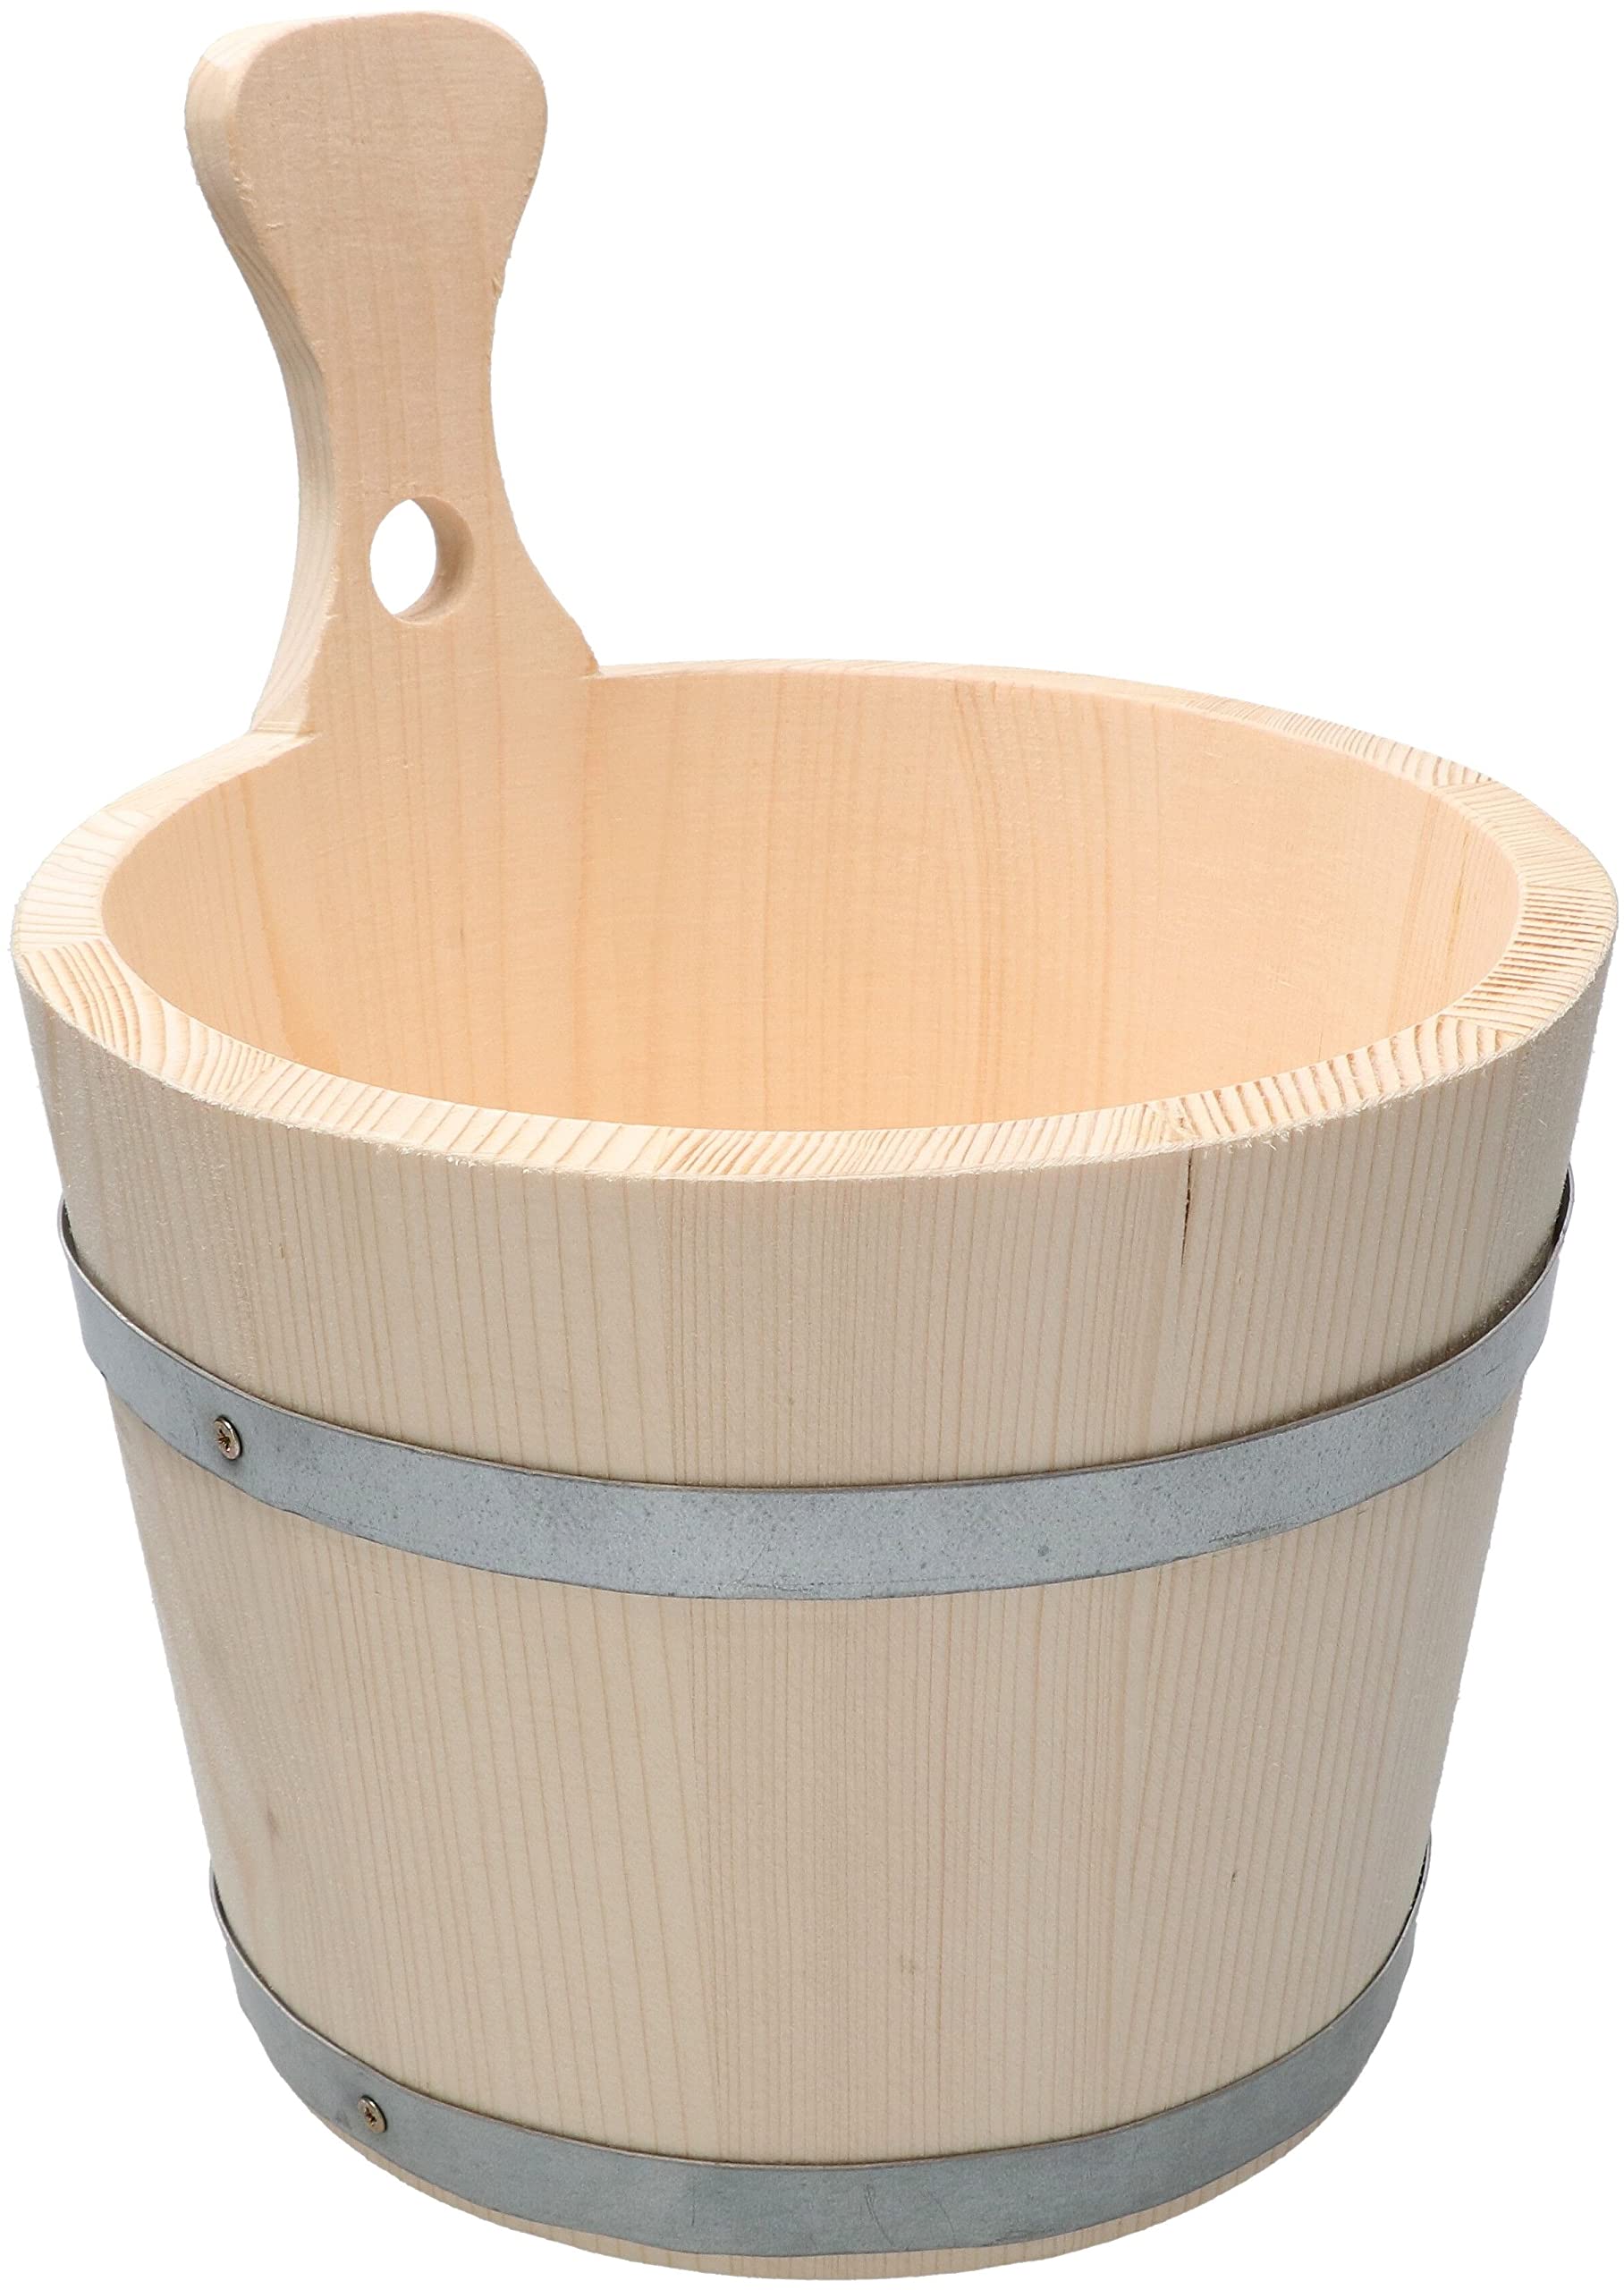 KOTARBAU® Saunakübel Saunaeimer aus Holz 5 Liter mit Griff zum Anmischen von Saunaaufguss